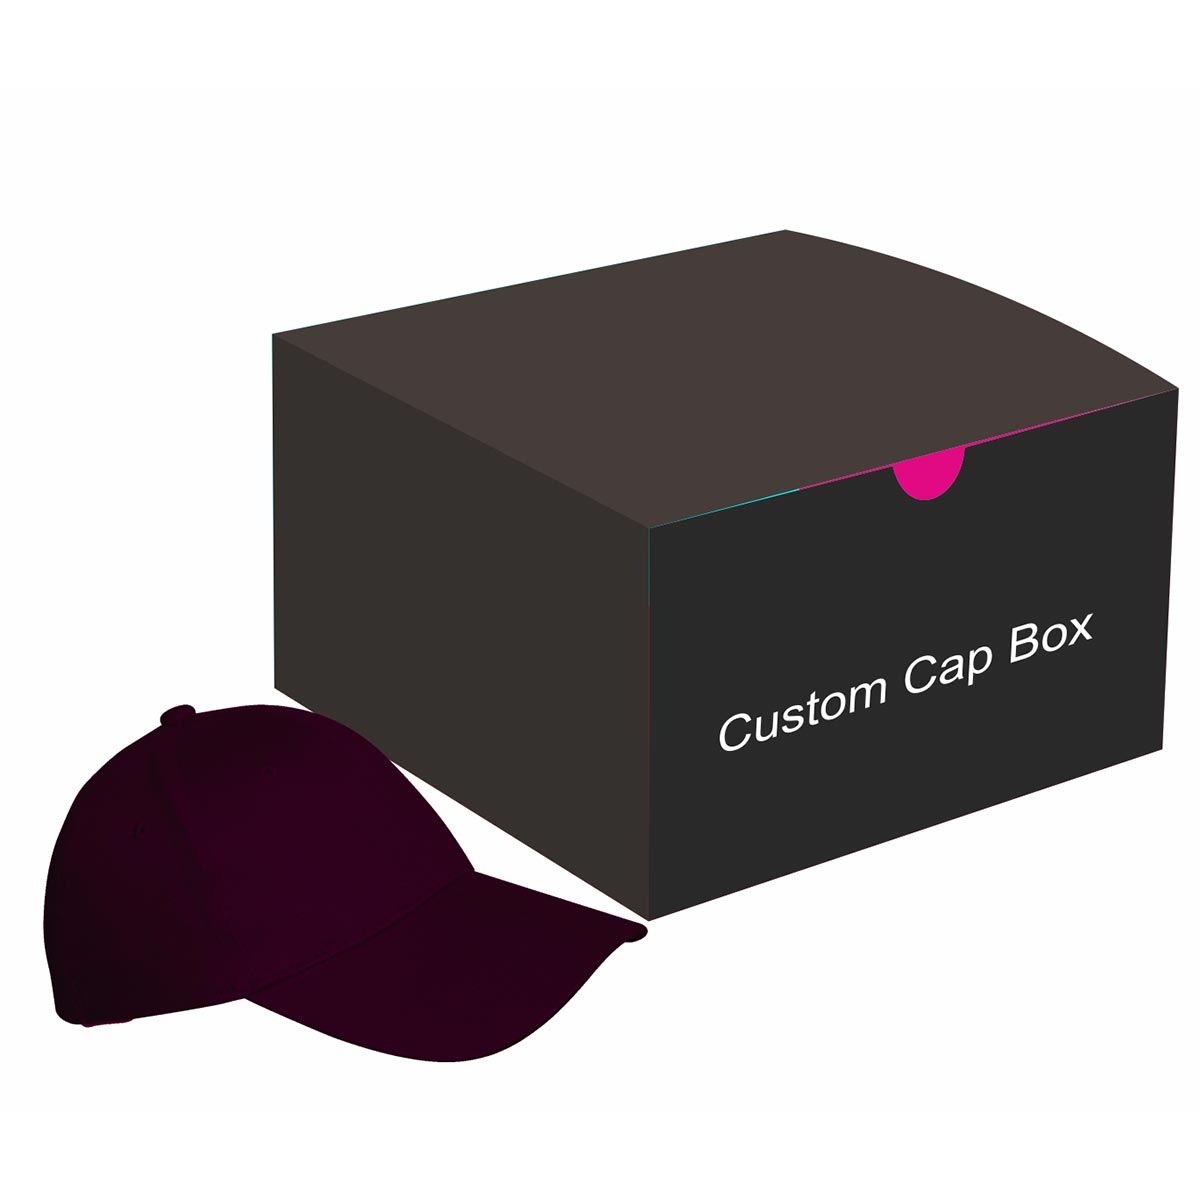 Custom Cap Box